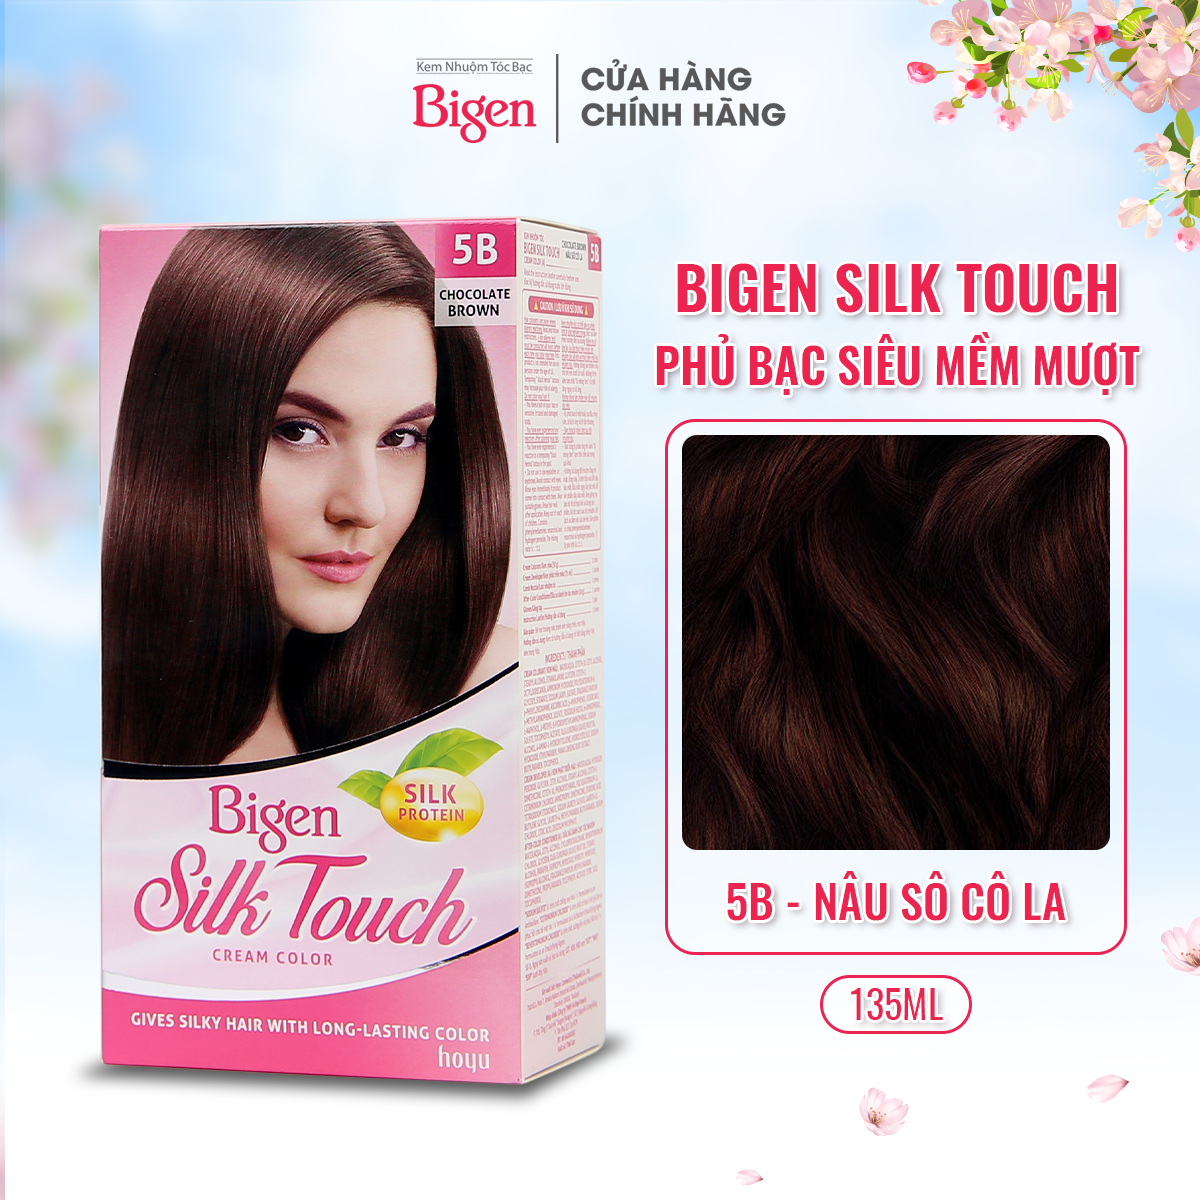 Bigen Silk Touch là sản phẩm nhuộm tóc cao cấp với công thức đặc biệt giúp bảo vệ sợi tóc khỏi những tác động từ môi trường. Tận hưởng cảm giác mềm mượt và bóng đẹp của tóc với Bigen Silk Touch.